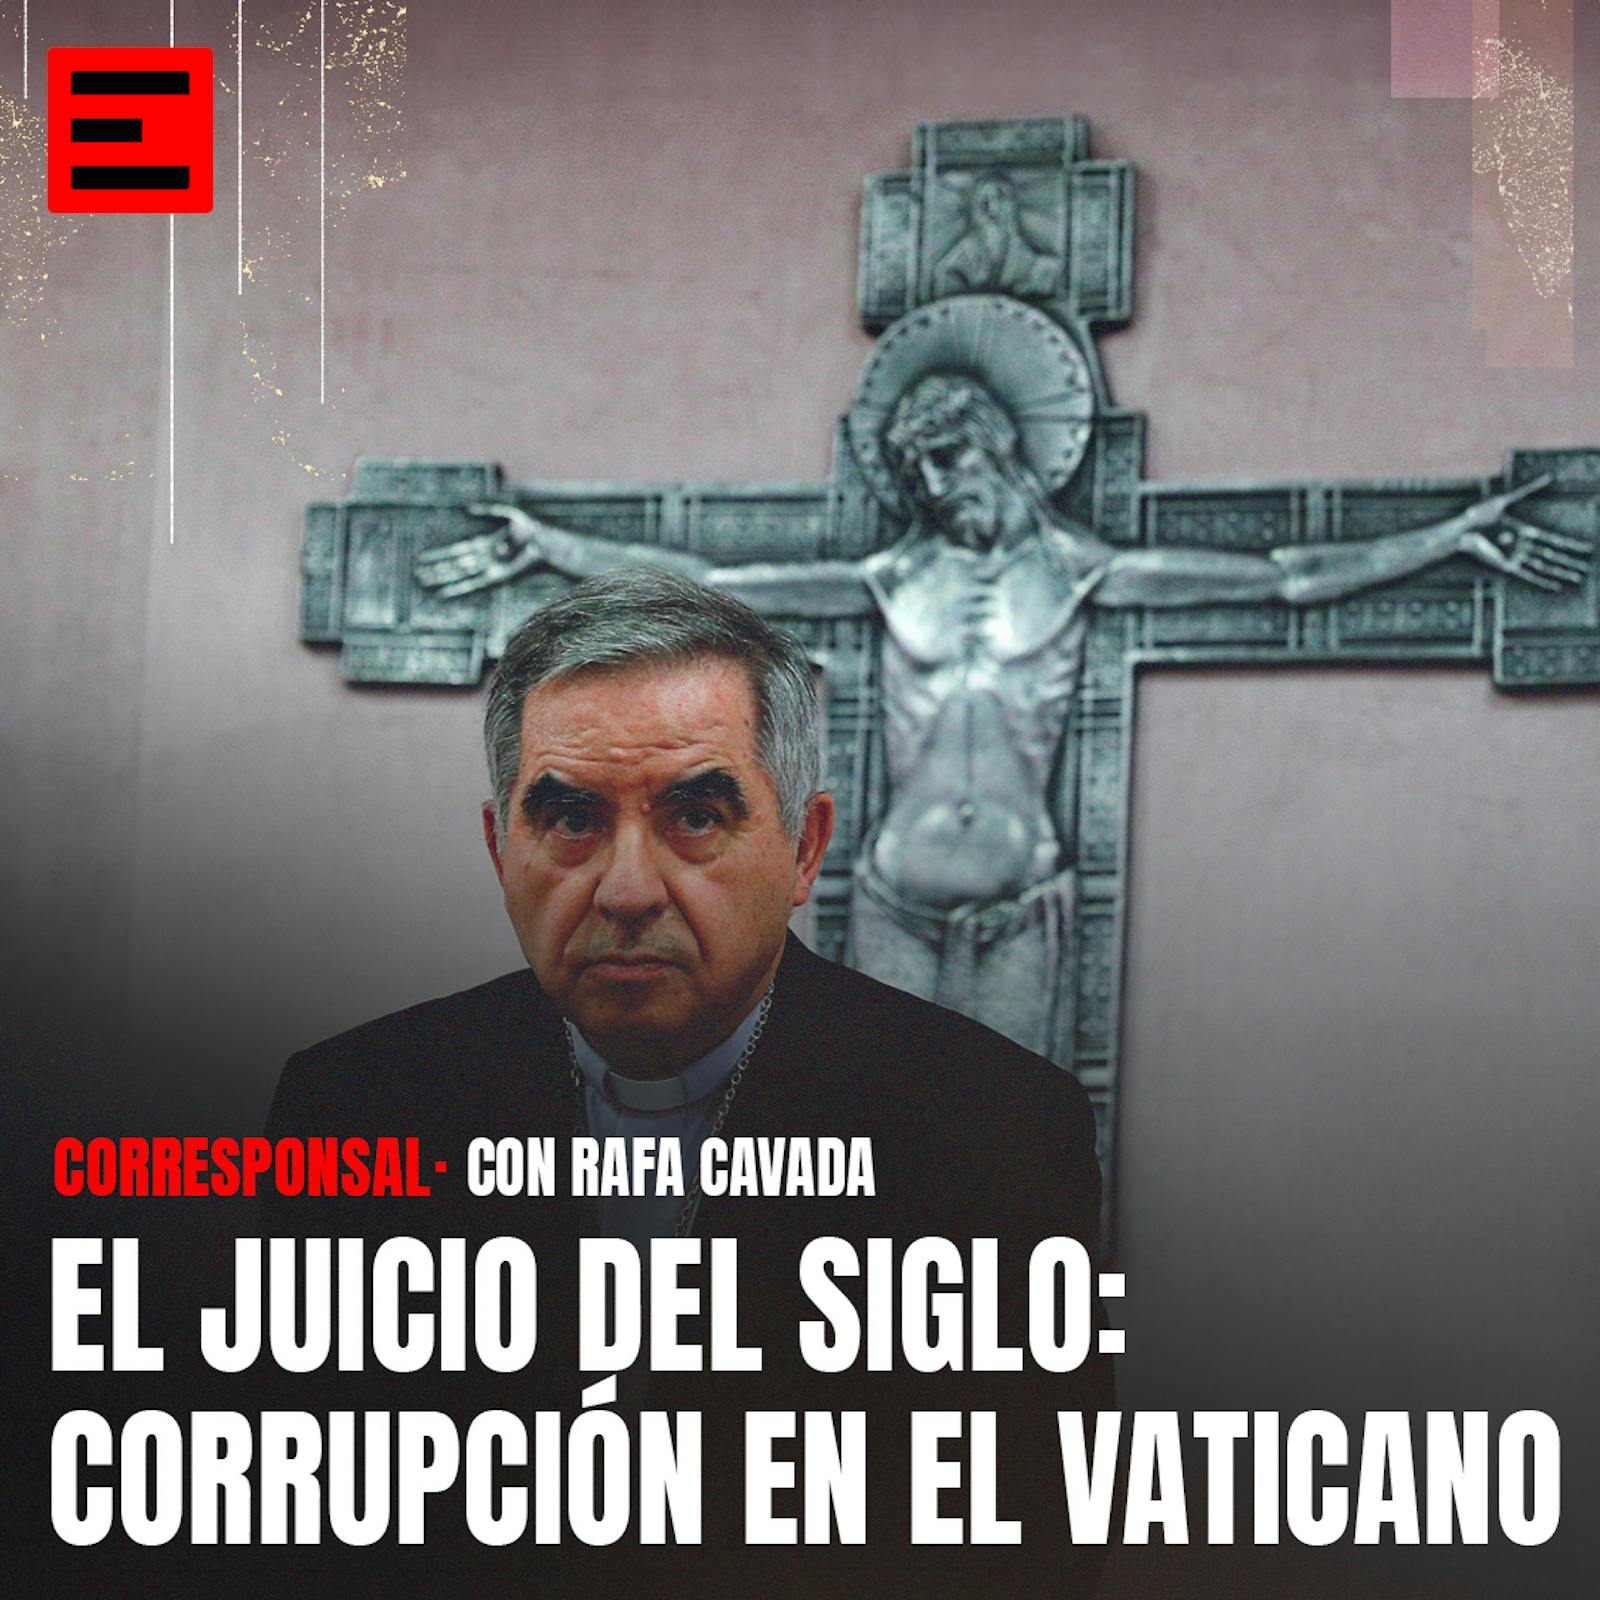 El juicio del siglo: Corrupción en el Vaticano